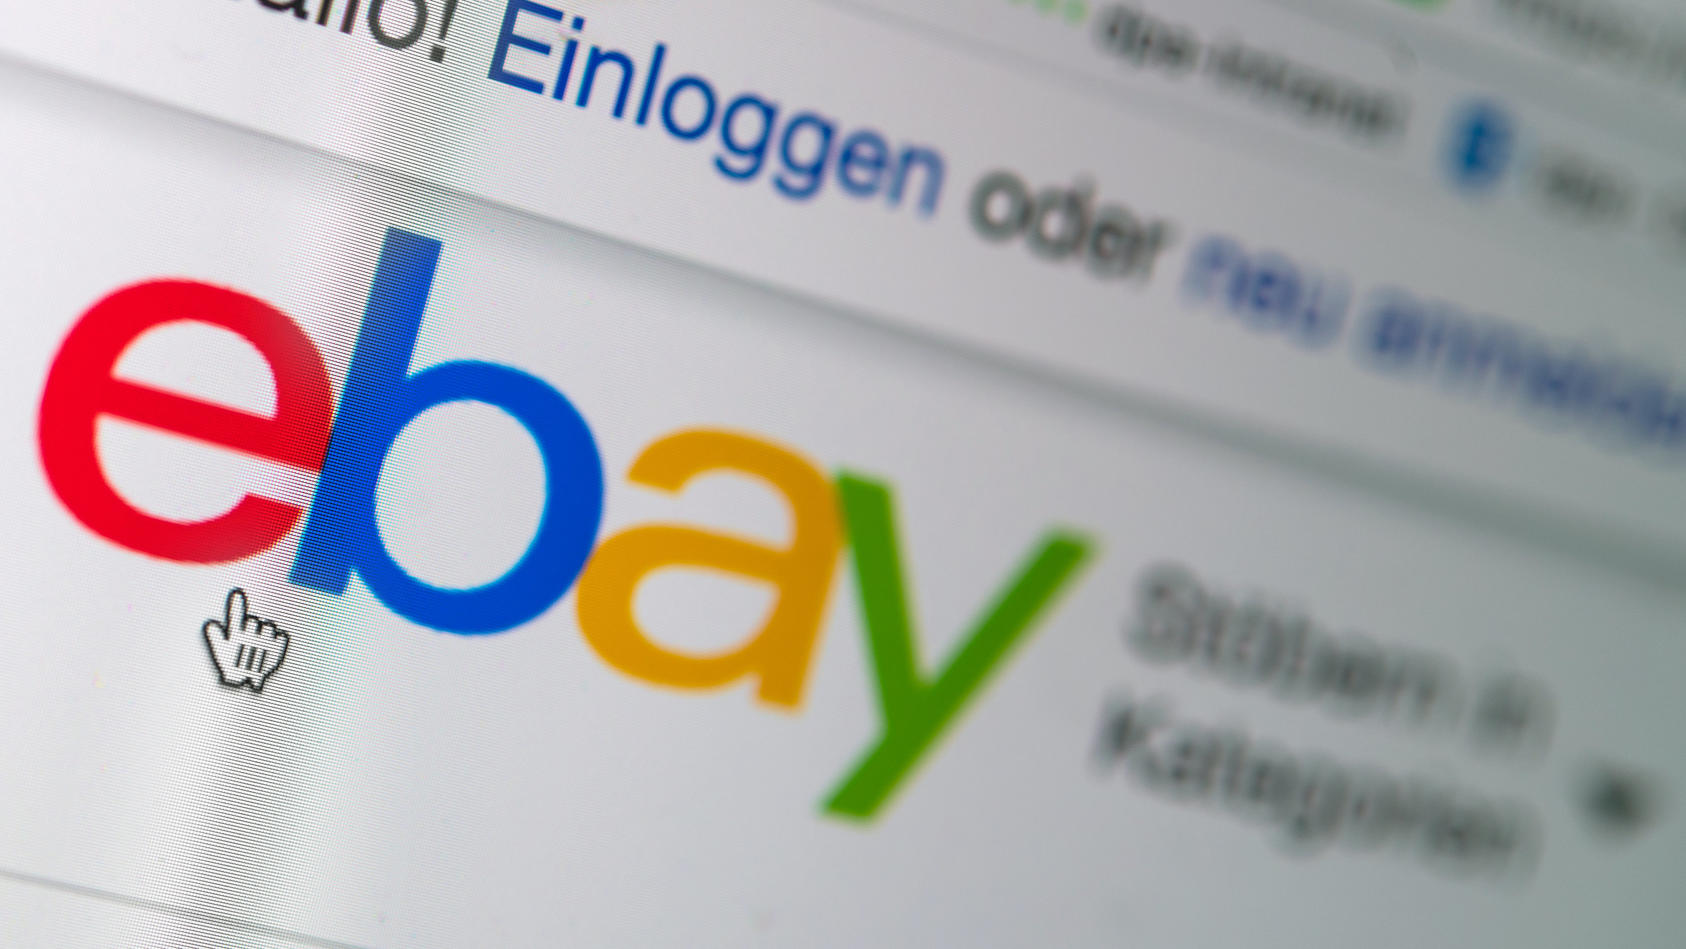 ARCHIV - 11.07.2018, Sachsen, Dresden: Das Logo von Ebay auf der Startseite der Internet-Verkaufsplattform. Ebay teilt am 28.07.2020 Zahlen zum 2. Quartal mit. Foto: Monika Skolimowska/ZB/dpa +++ dpa-Bildfunk +++